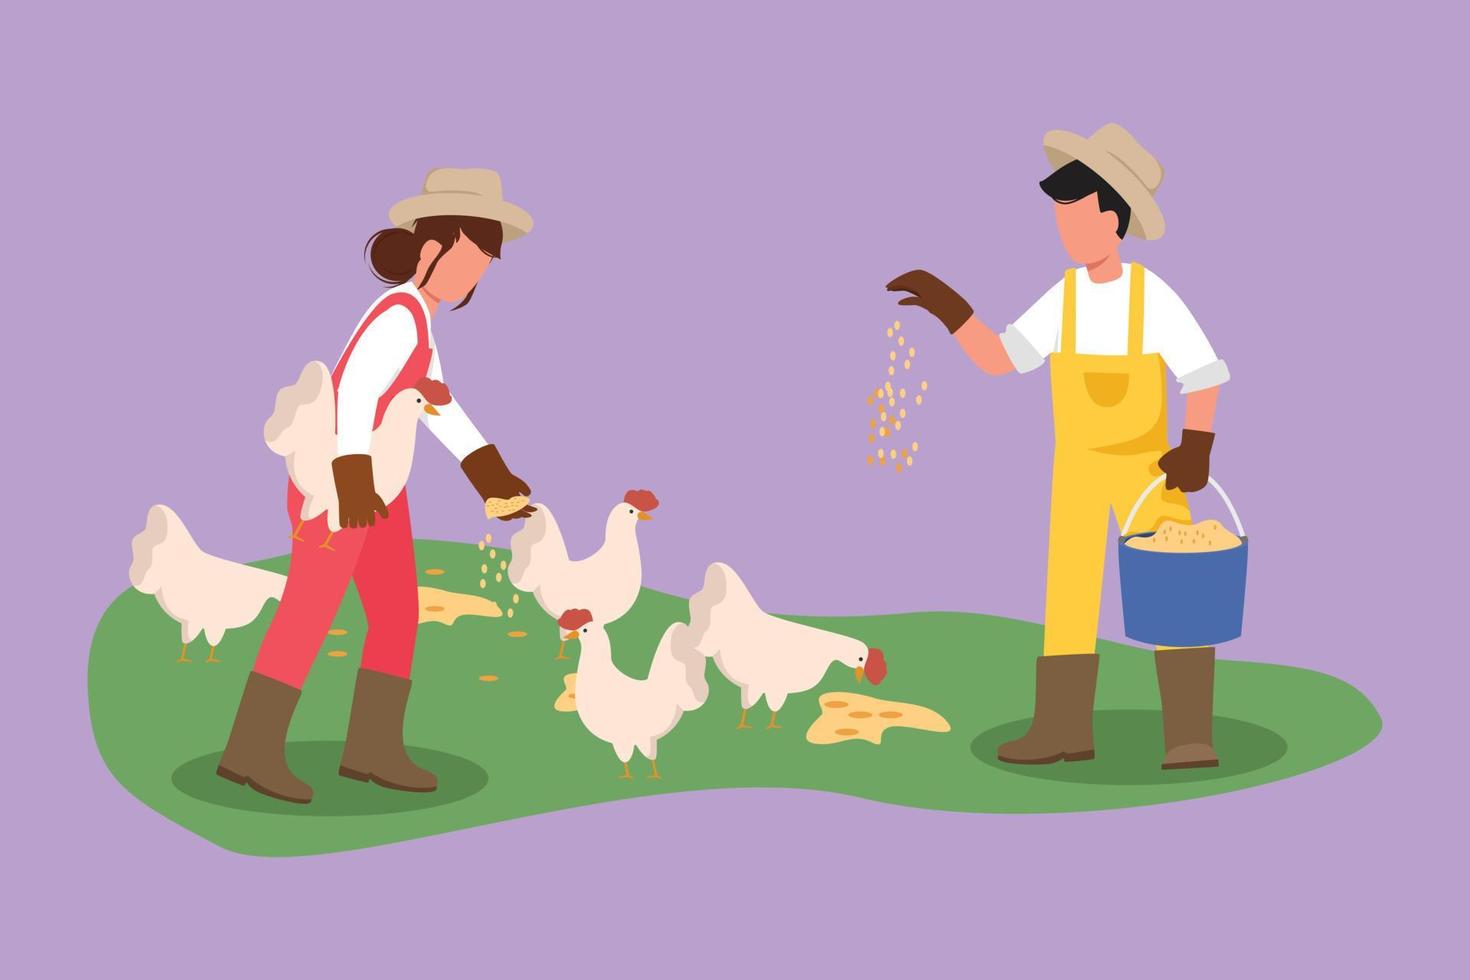 estilo simples dos desenhos animados desenhando casal fazendeiros segurando balde de sementes e alimentando galinhas e galinhas. agricultura rural. cena rural com trabalhador agrícola, aves. ilustração vetorial de design gráfico vetor